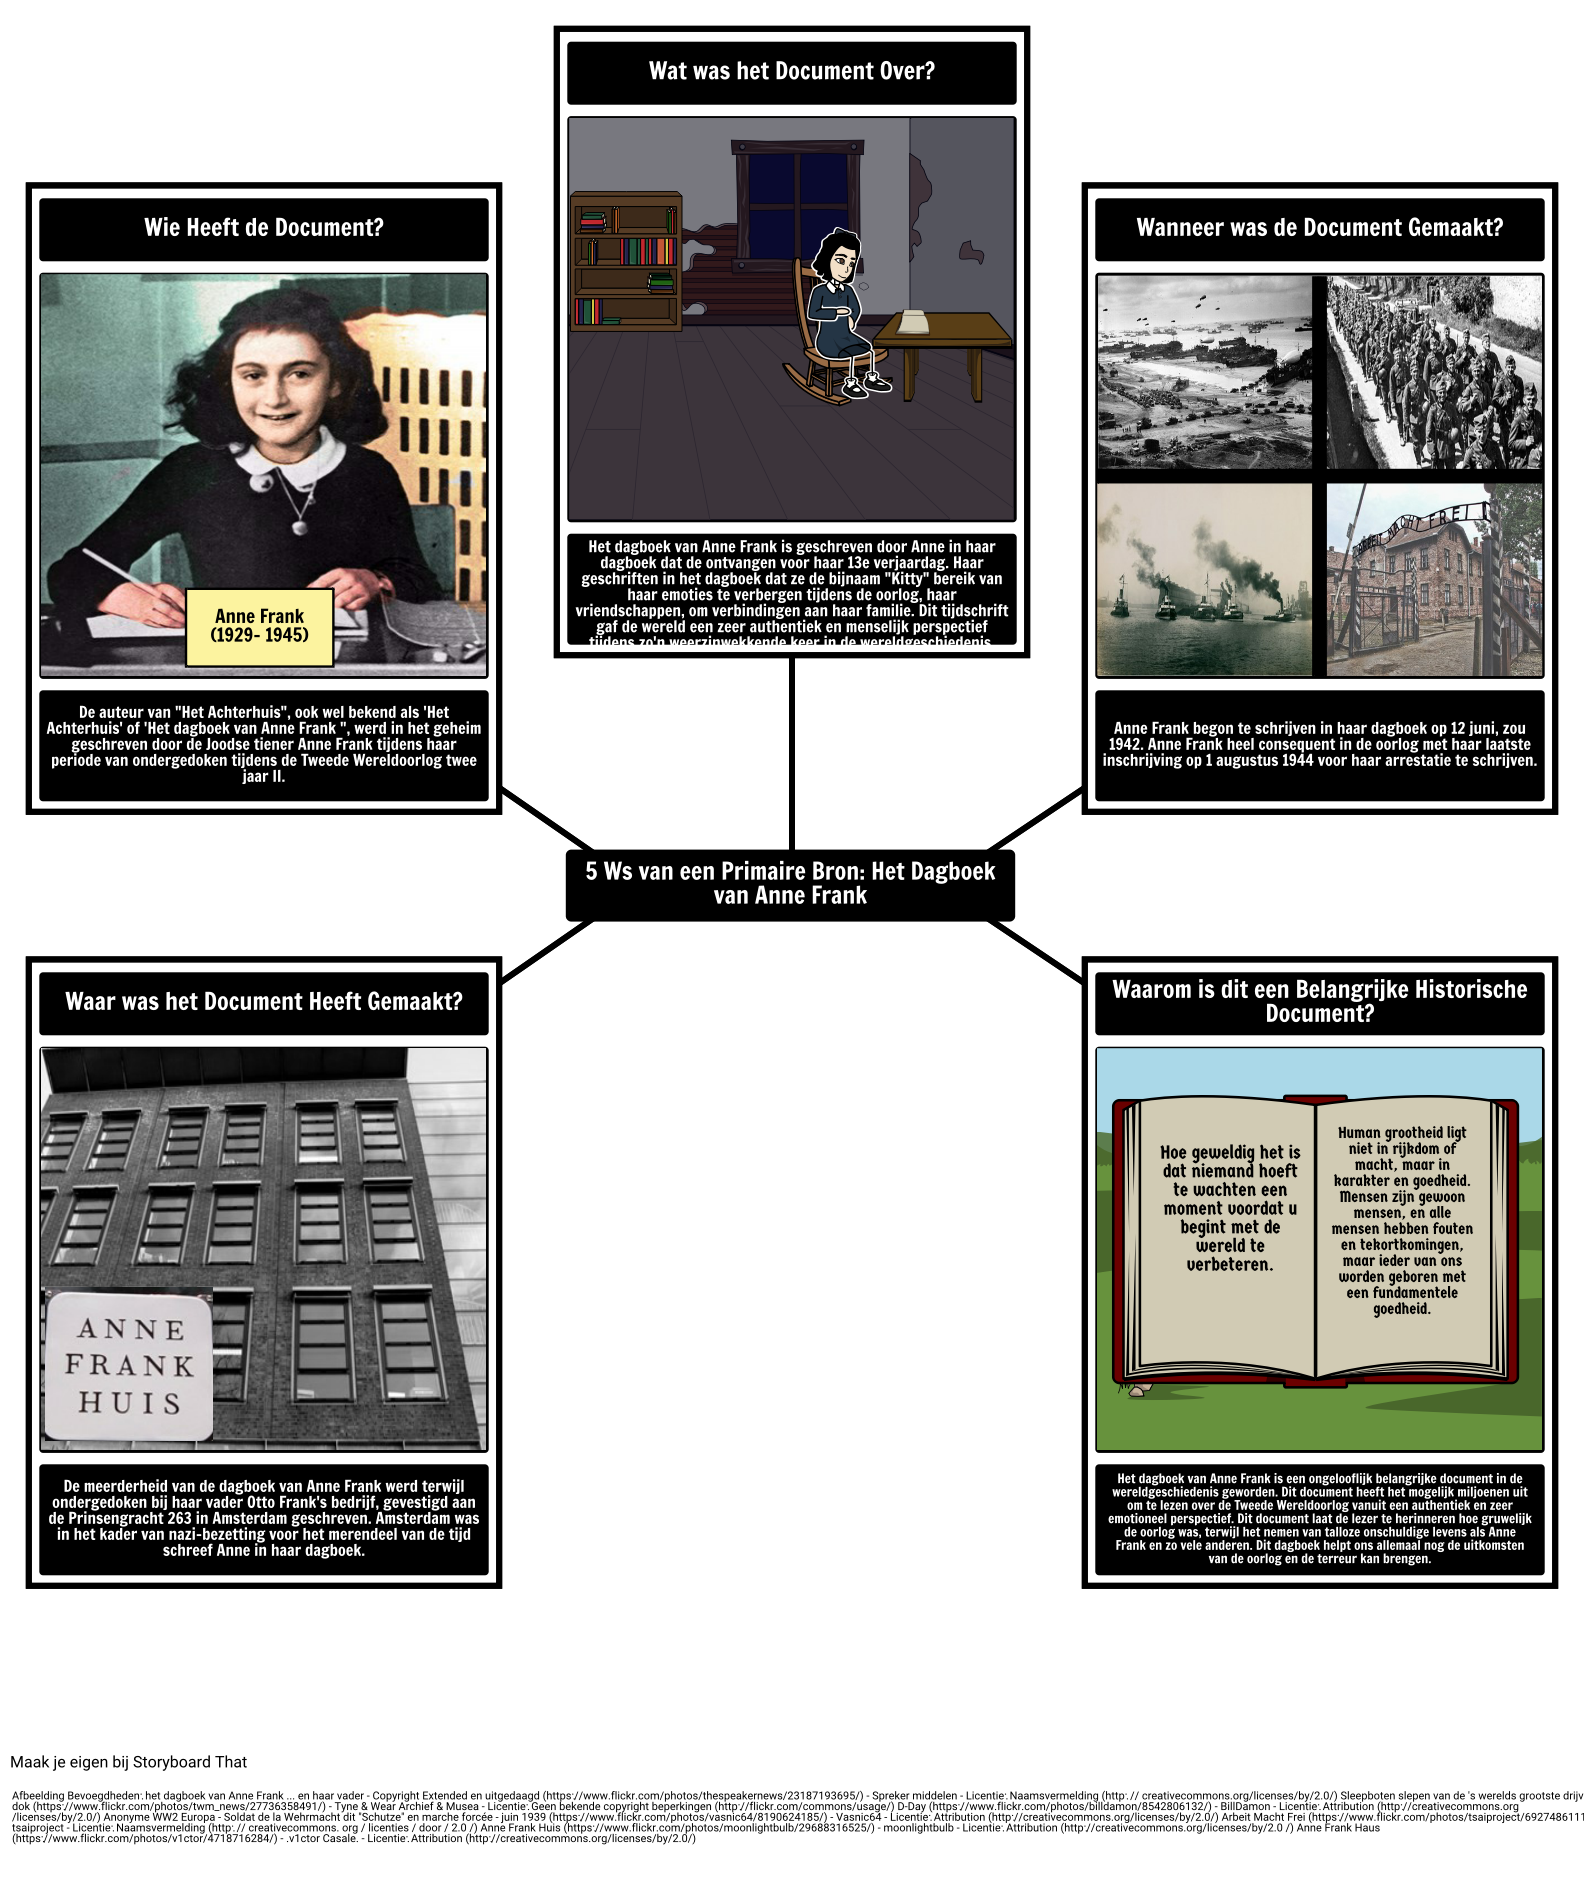 Primaire bron 5Ws: Het dagboek van Anne Frank